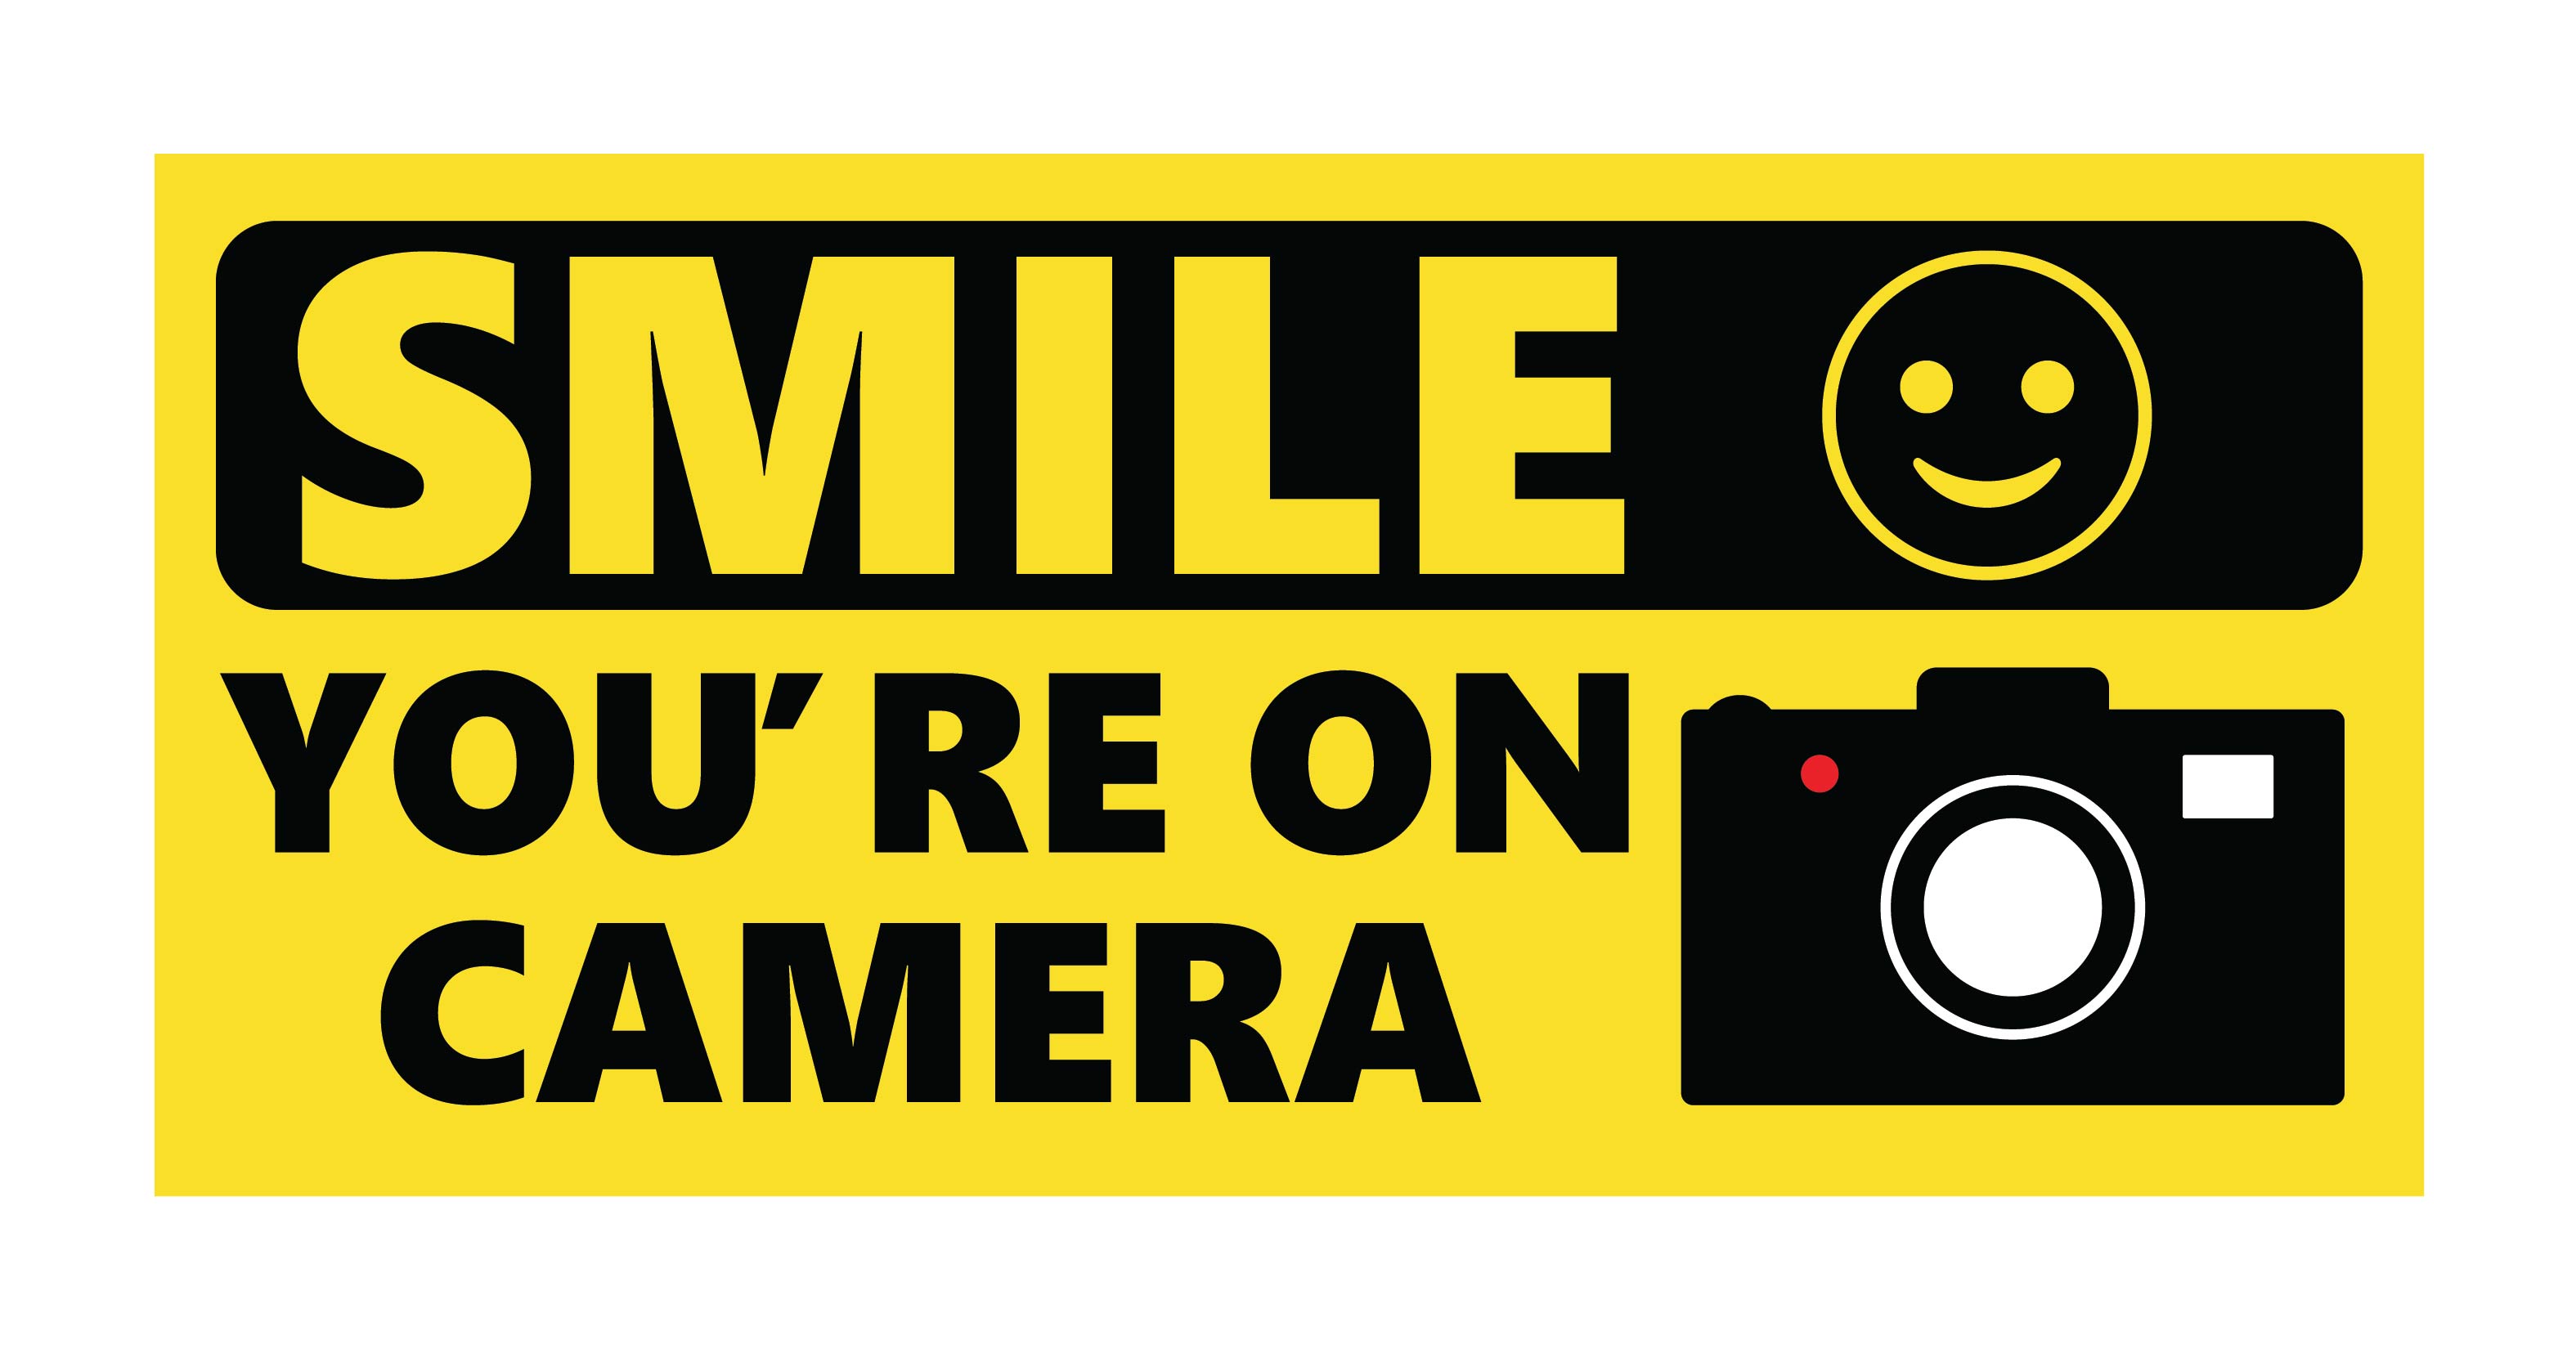 Bumper Sticker - Smile! You Are on Dash Cam Black